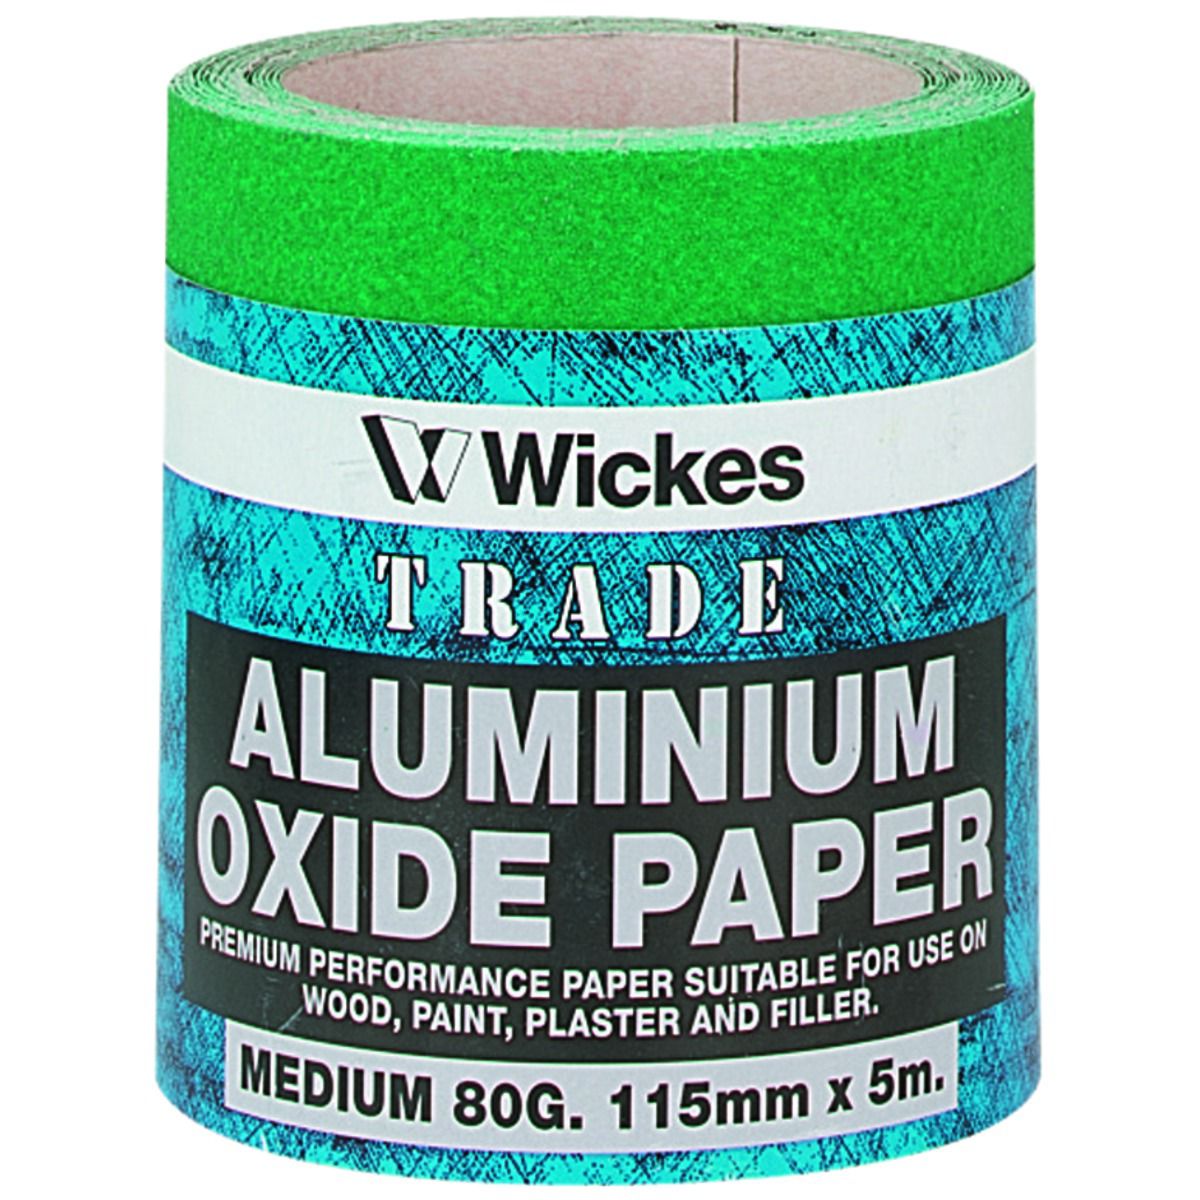 Image of Wickes Aluminium Oxide Medium Sandpaper Roll - 5m